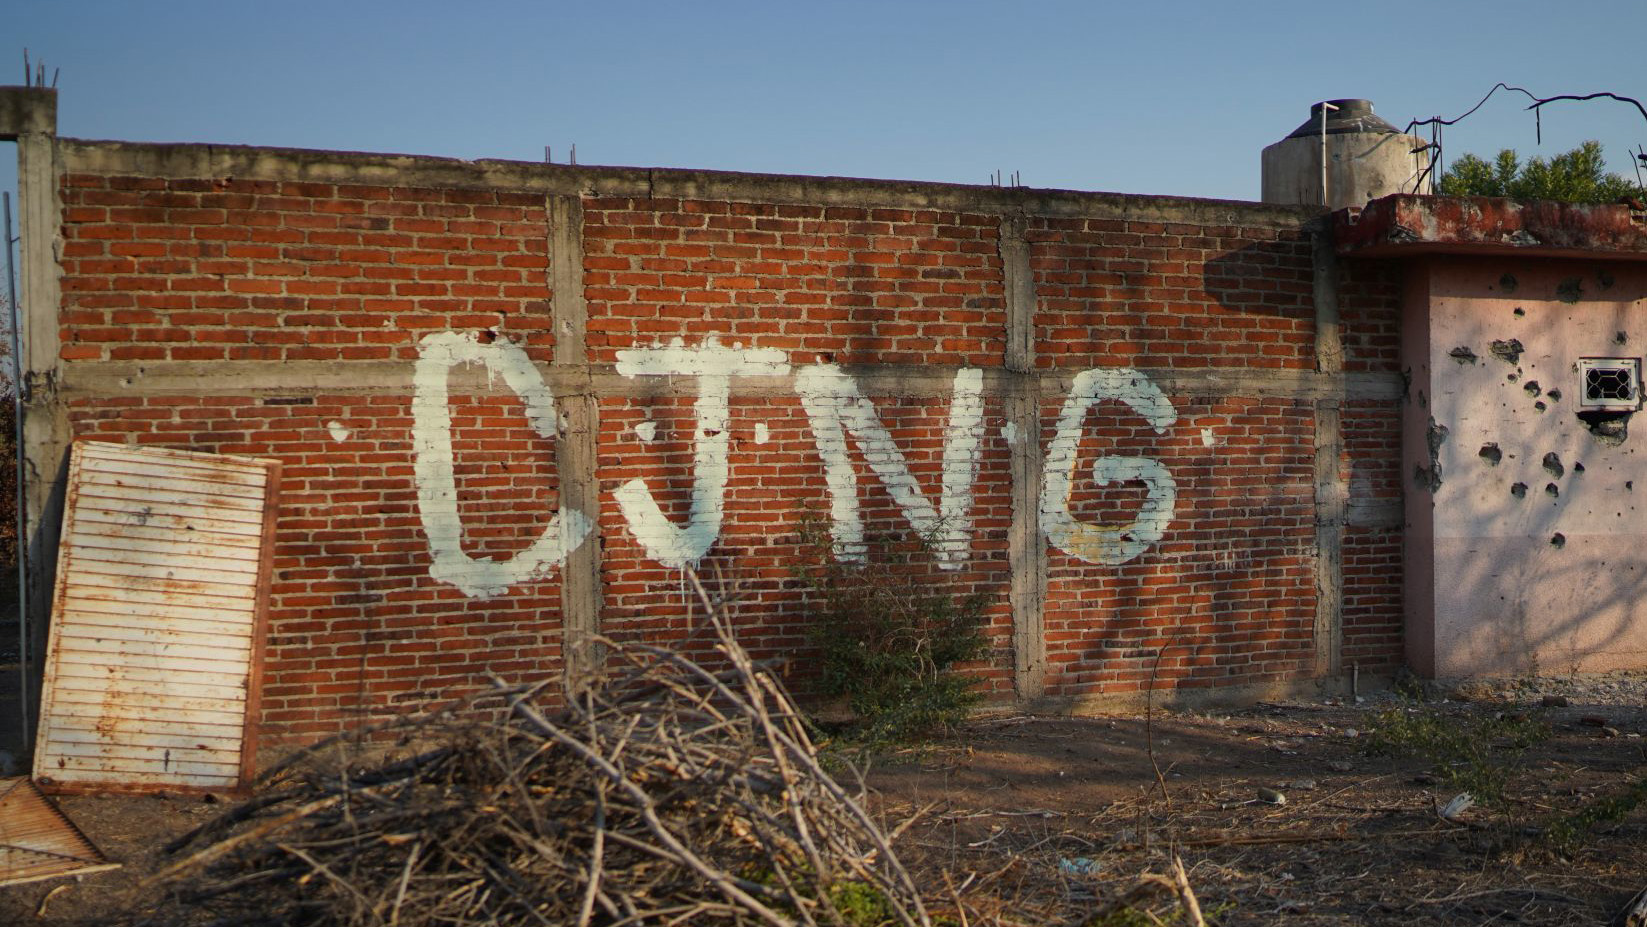 “Mejor no salgan de sus casas” narcomensajes atribuidos al CJNG circularon en Puebla 